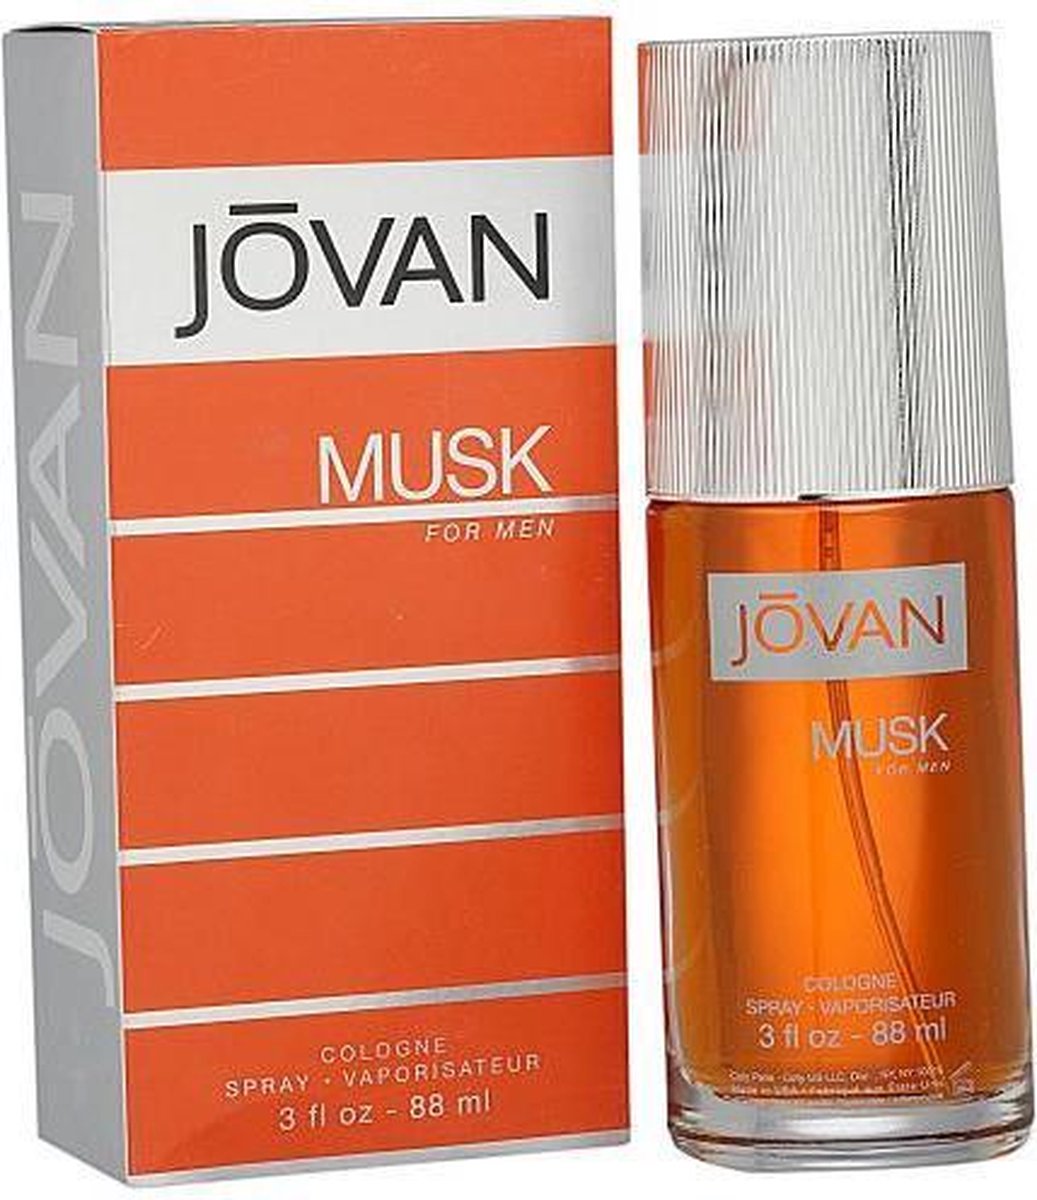 JOVAN MUSK by Jovan 90 ml - Cologne Spray